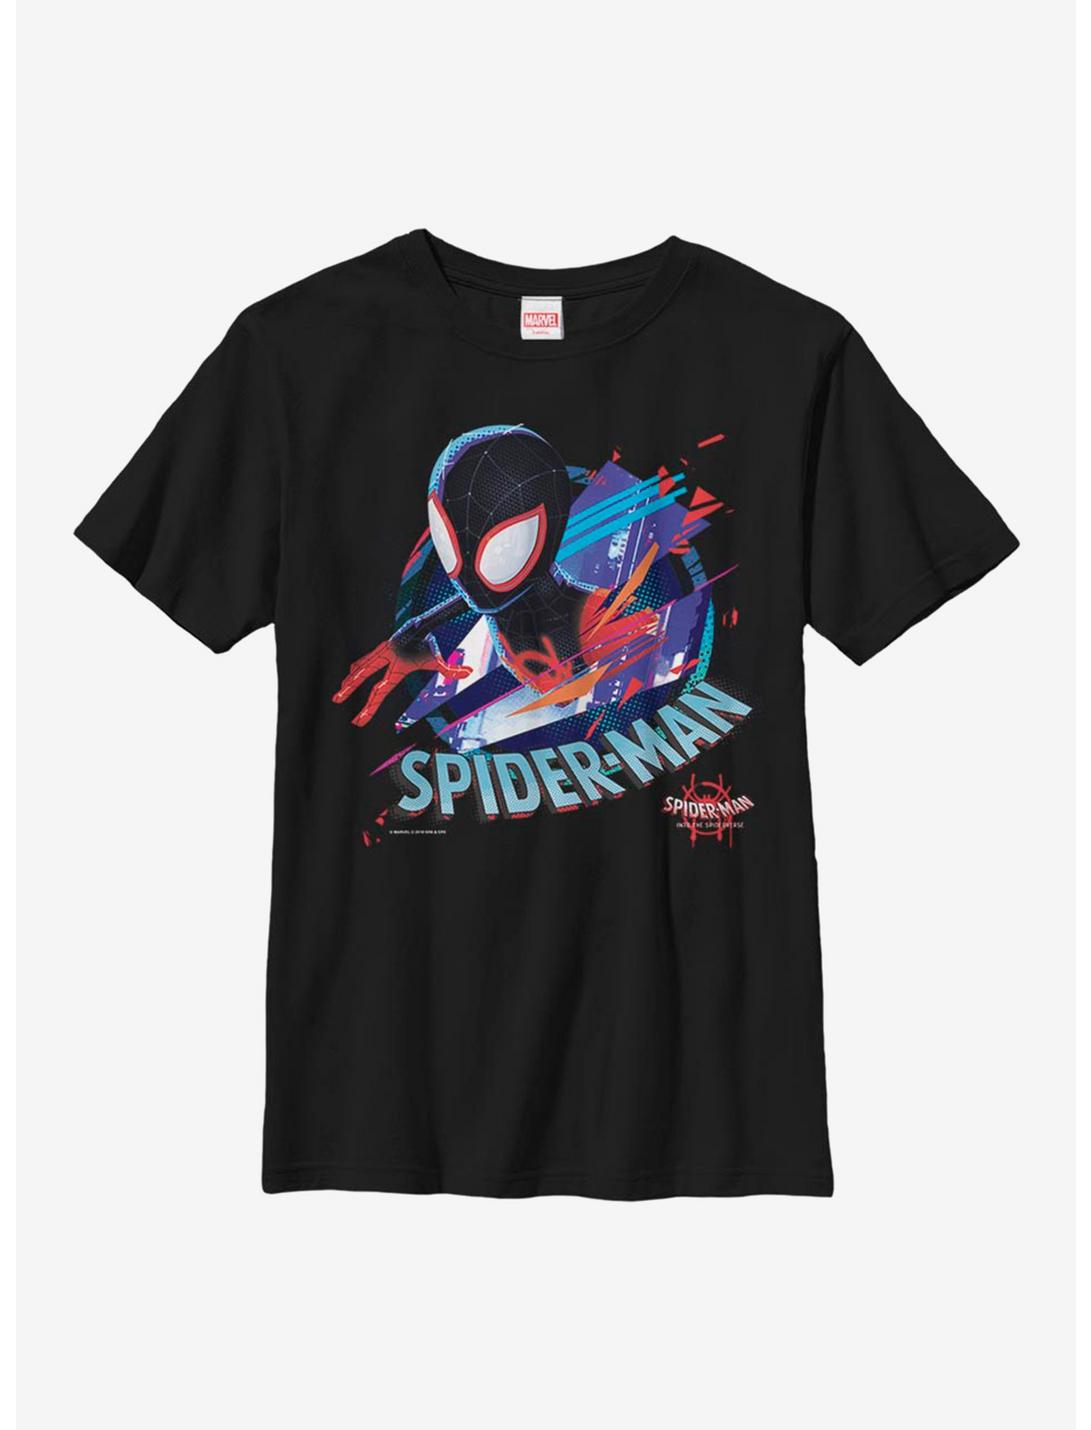 Marvel Spider-Man Cracked Spider Youth T-Shirt, BLACK, hi-res